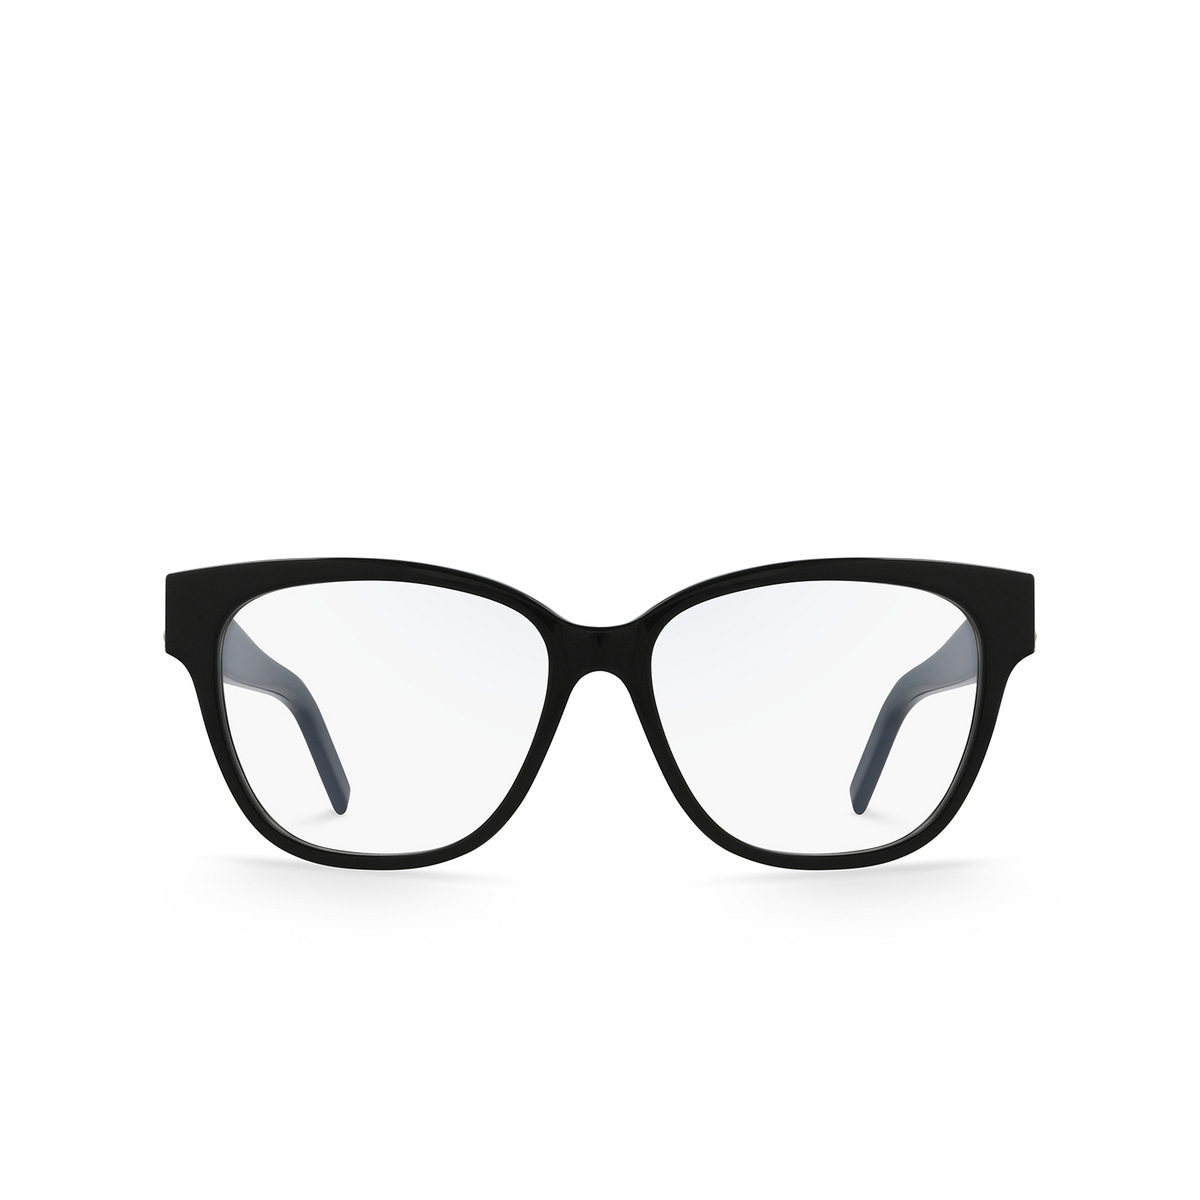 Saint Laurent® Square Eyeglasses: SL M33 color Black 003 - 1/3.